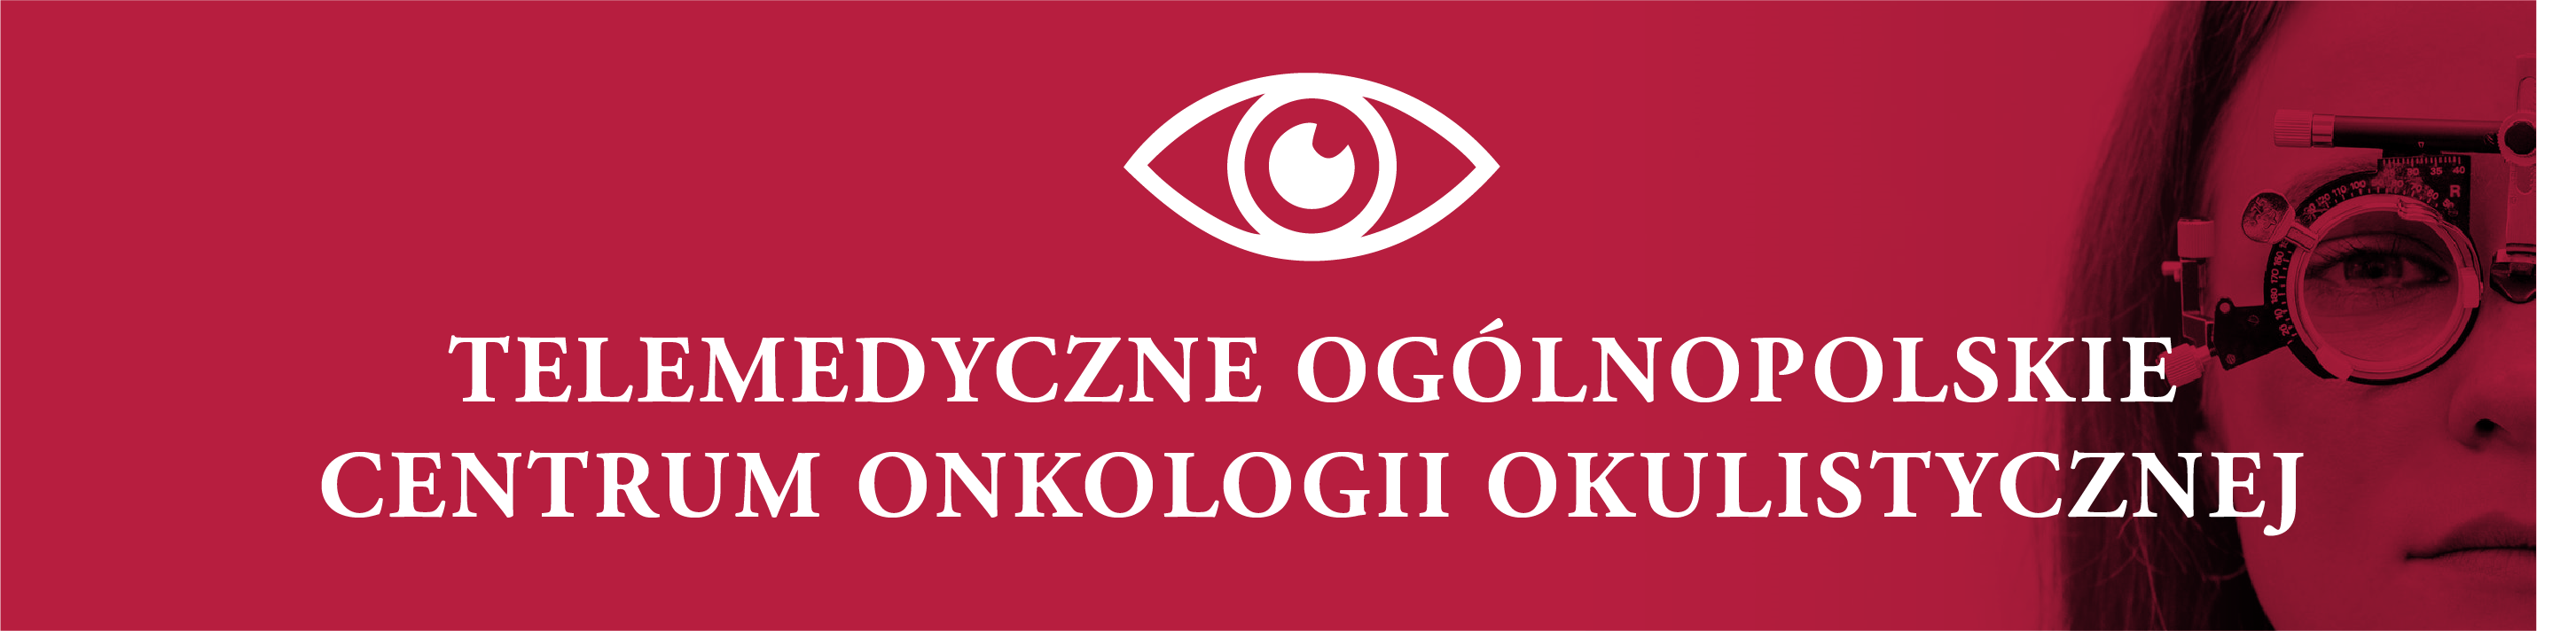 Telemedyczne Ogólnopolskie Centrum Onkologii Okulistycznej